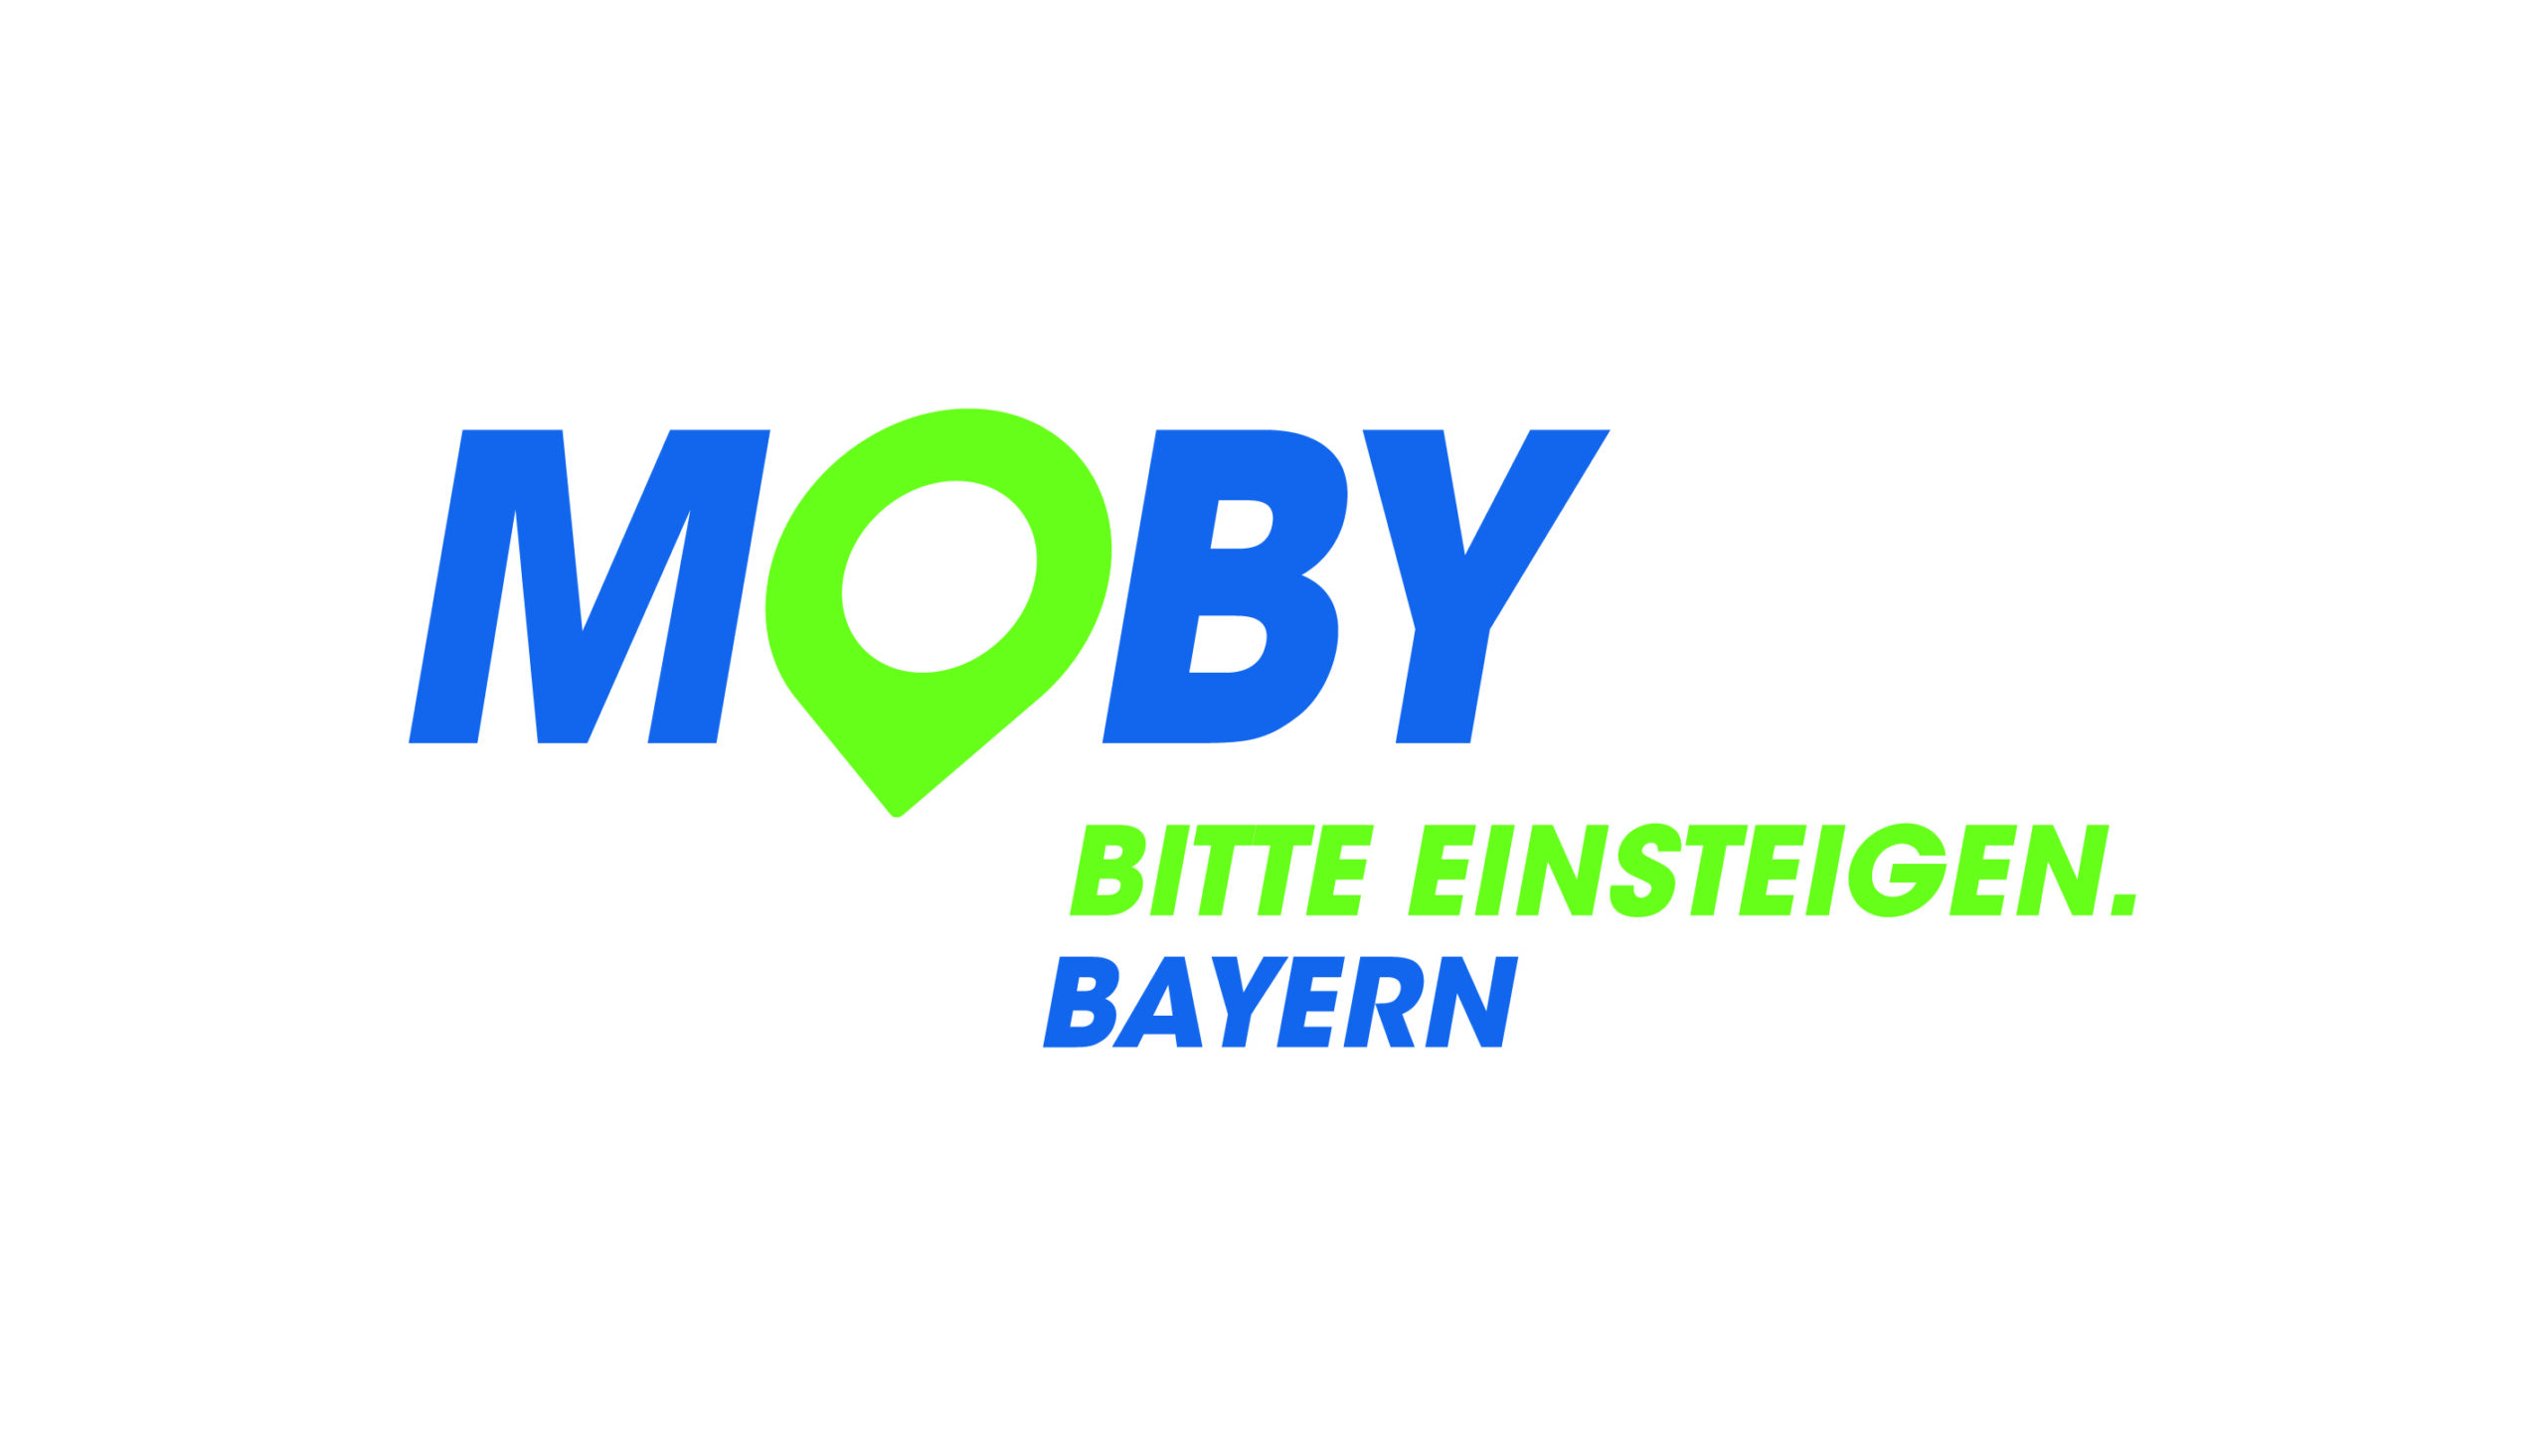 Zeigt nur das Logo Moby